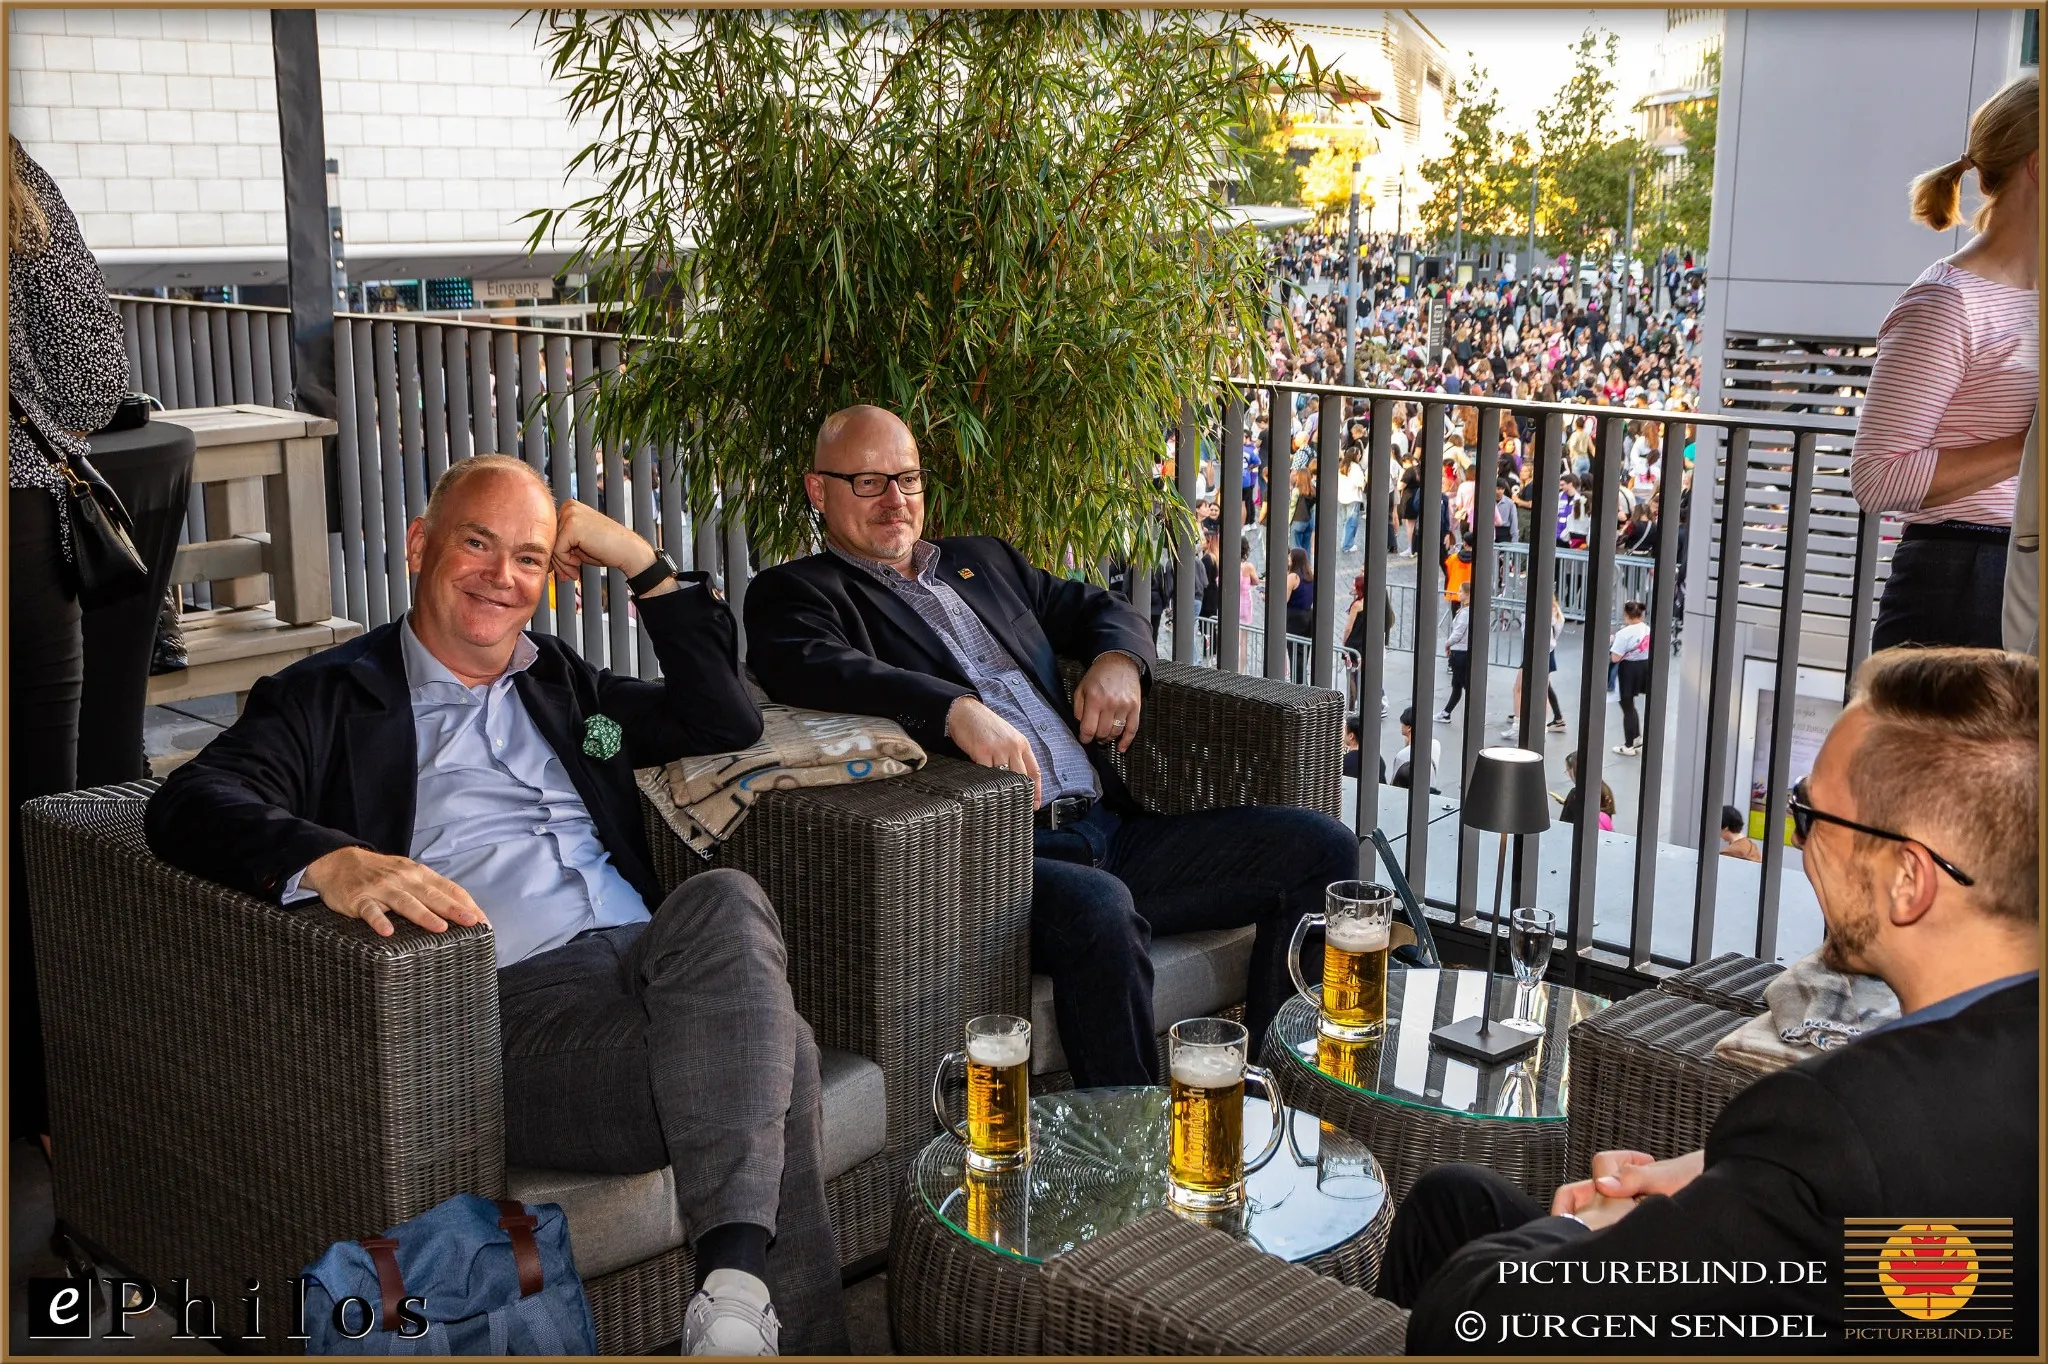 Geschäftstreffen von Ephilos: Drei Männer sitzen entspannt auf einer Terrasse mit Blick auf eine belebte Veranstaltung, genießen Bier und diskutieren über Softwarelösungen